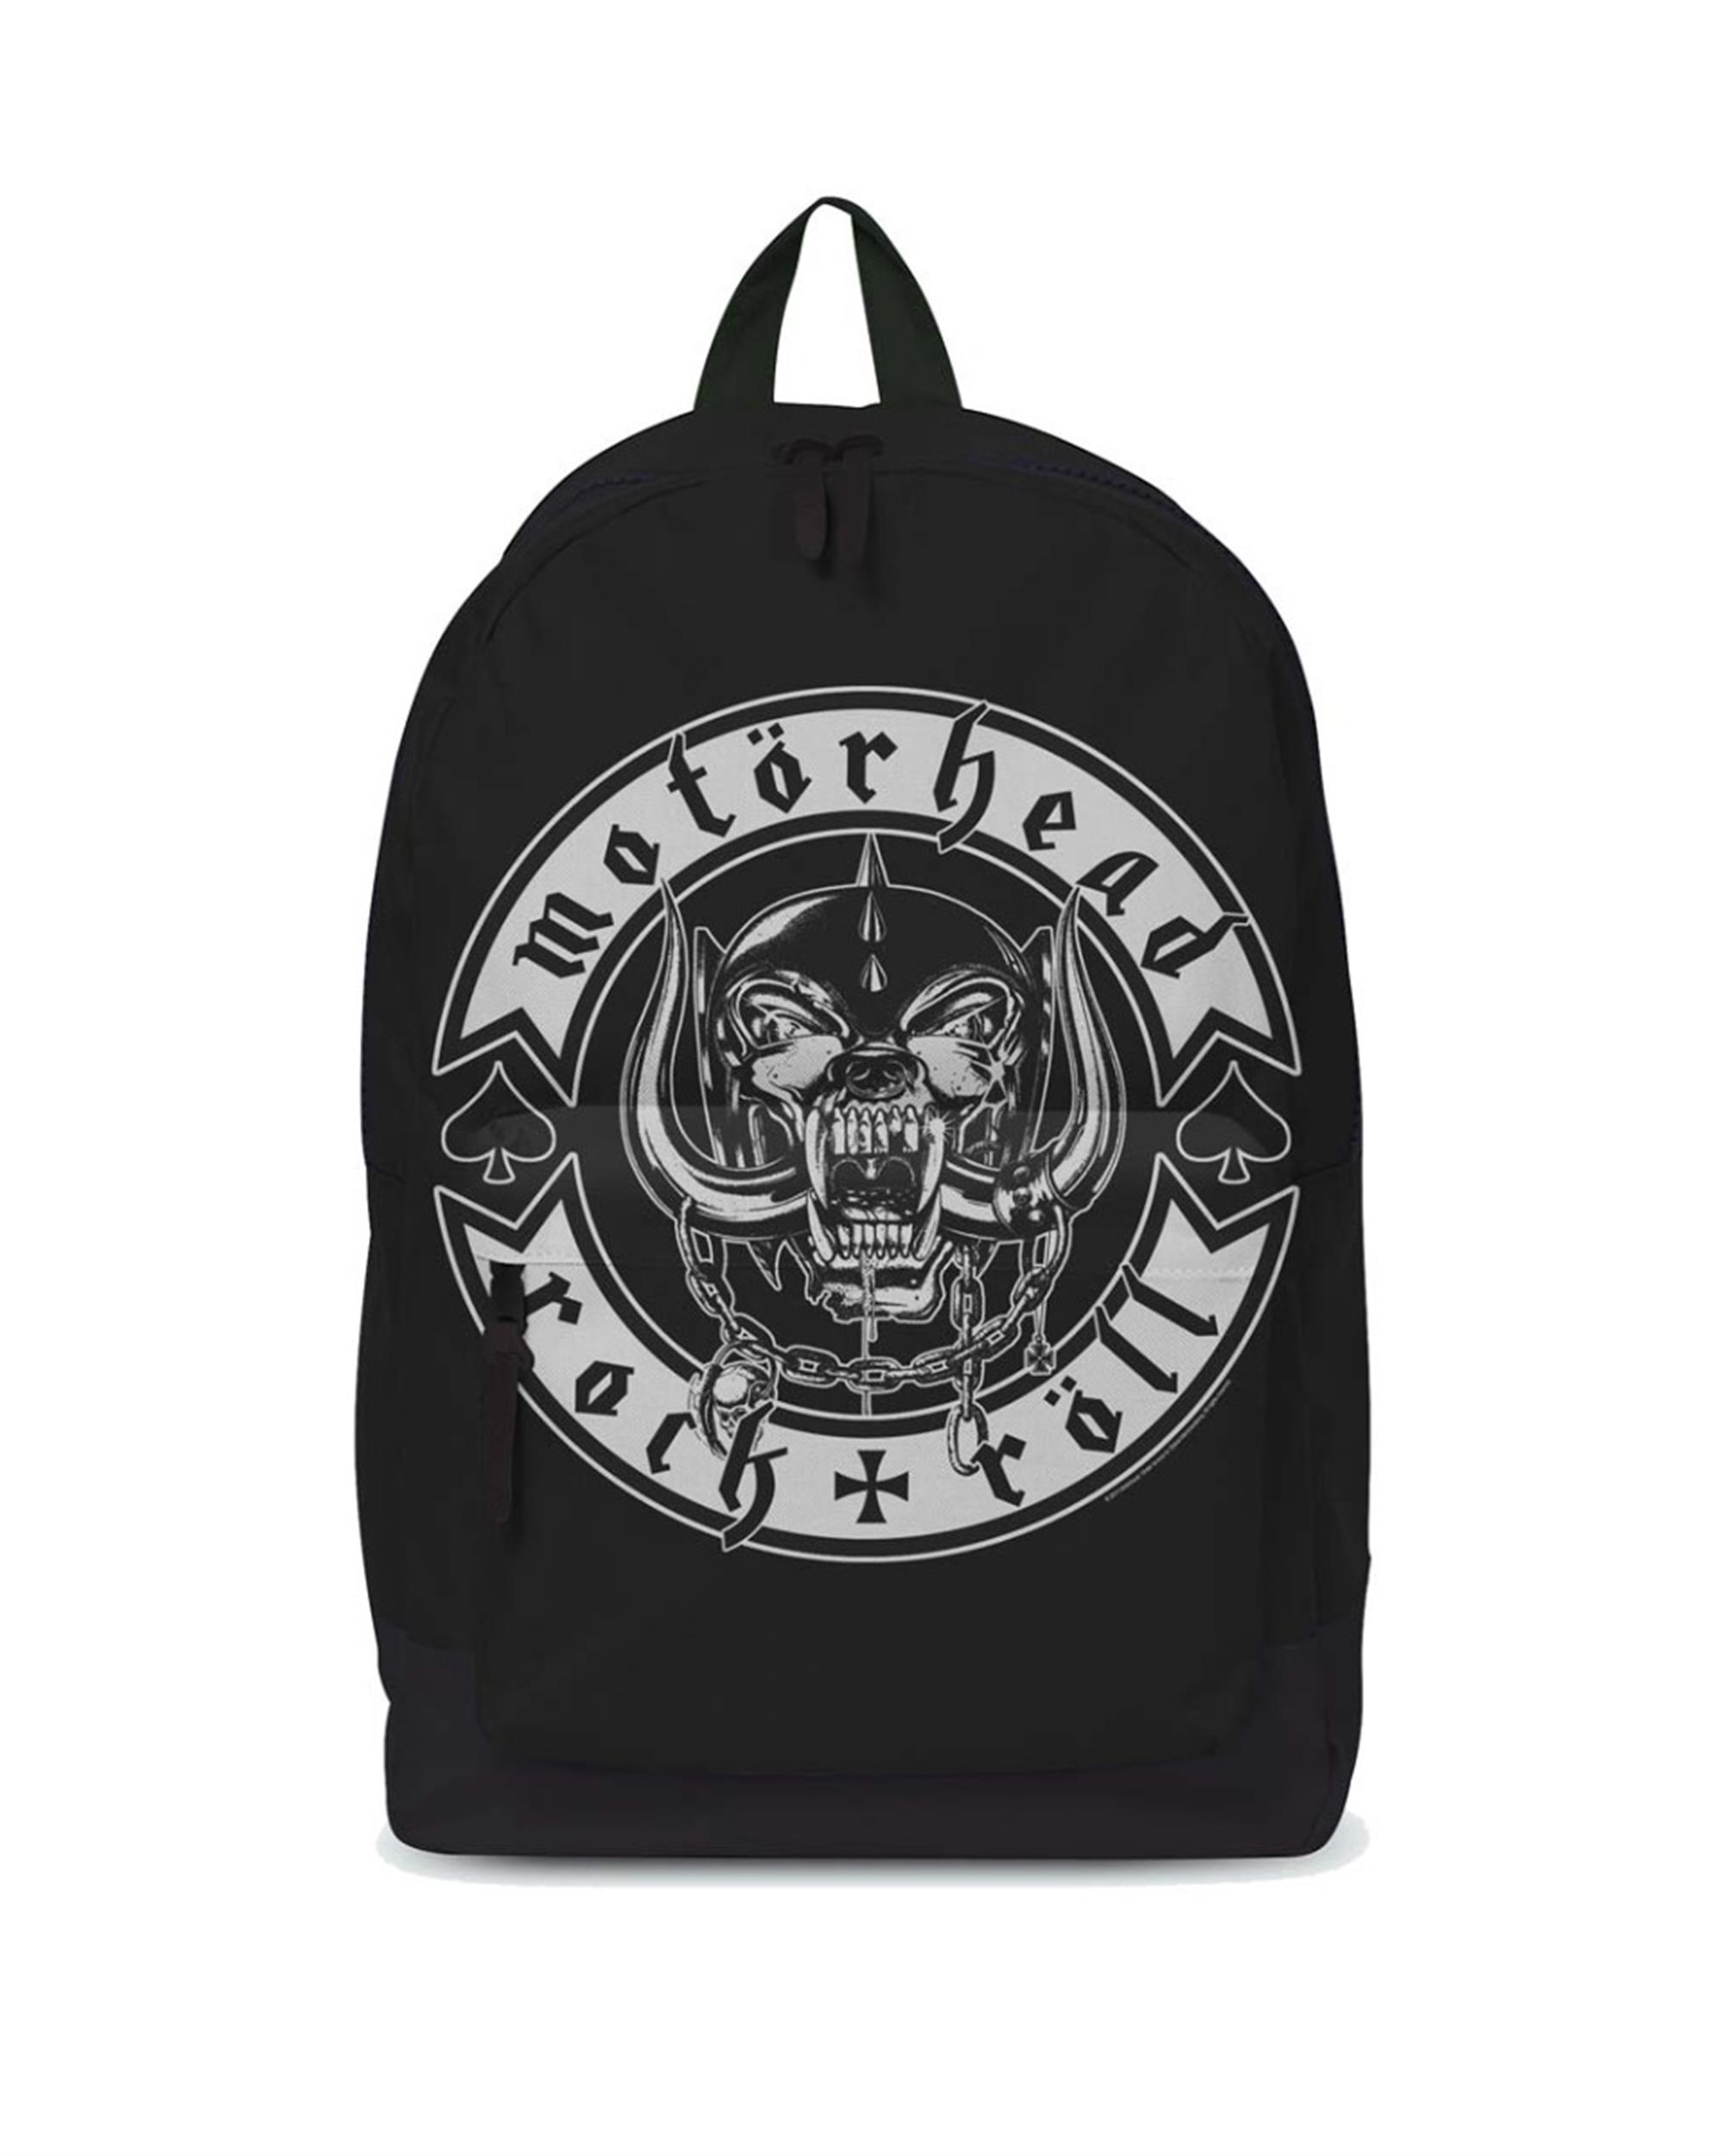 Motorhead Rock N Roll Classic Backpack